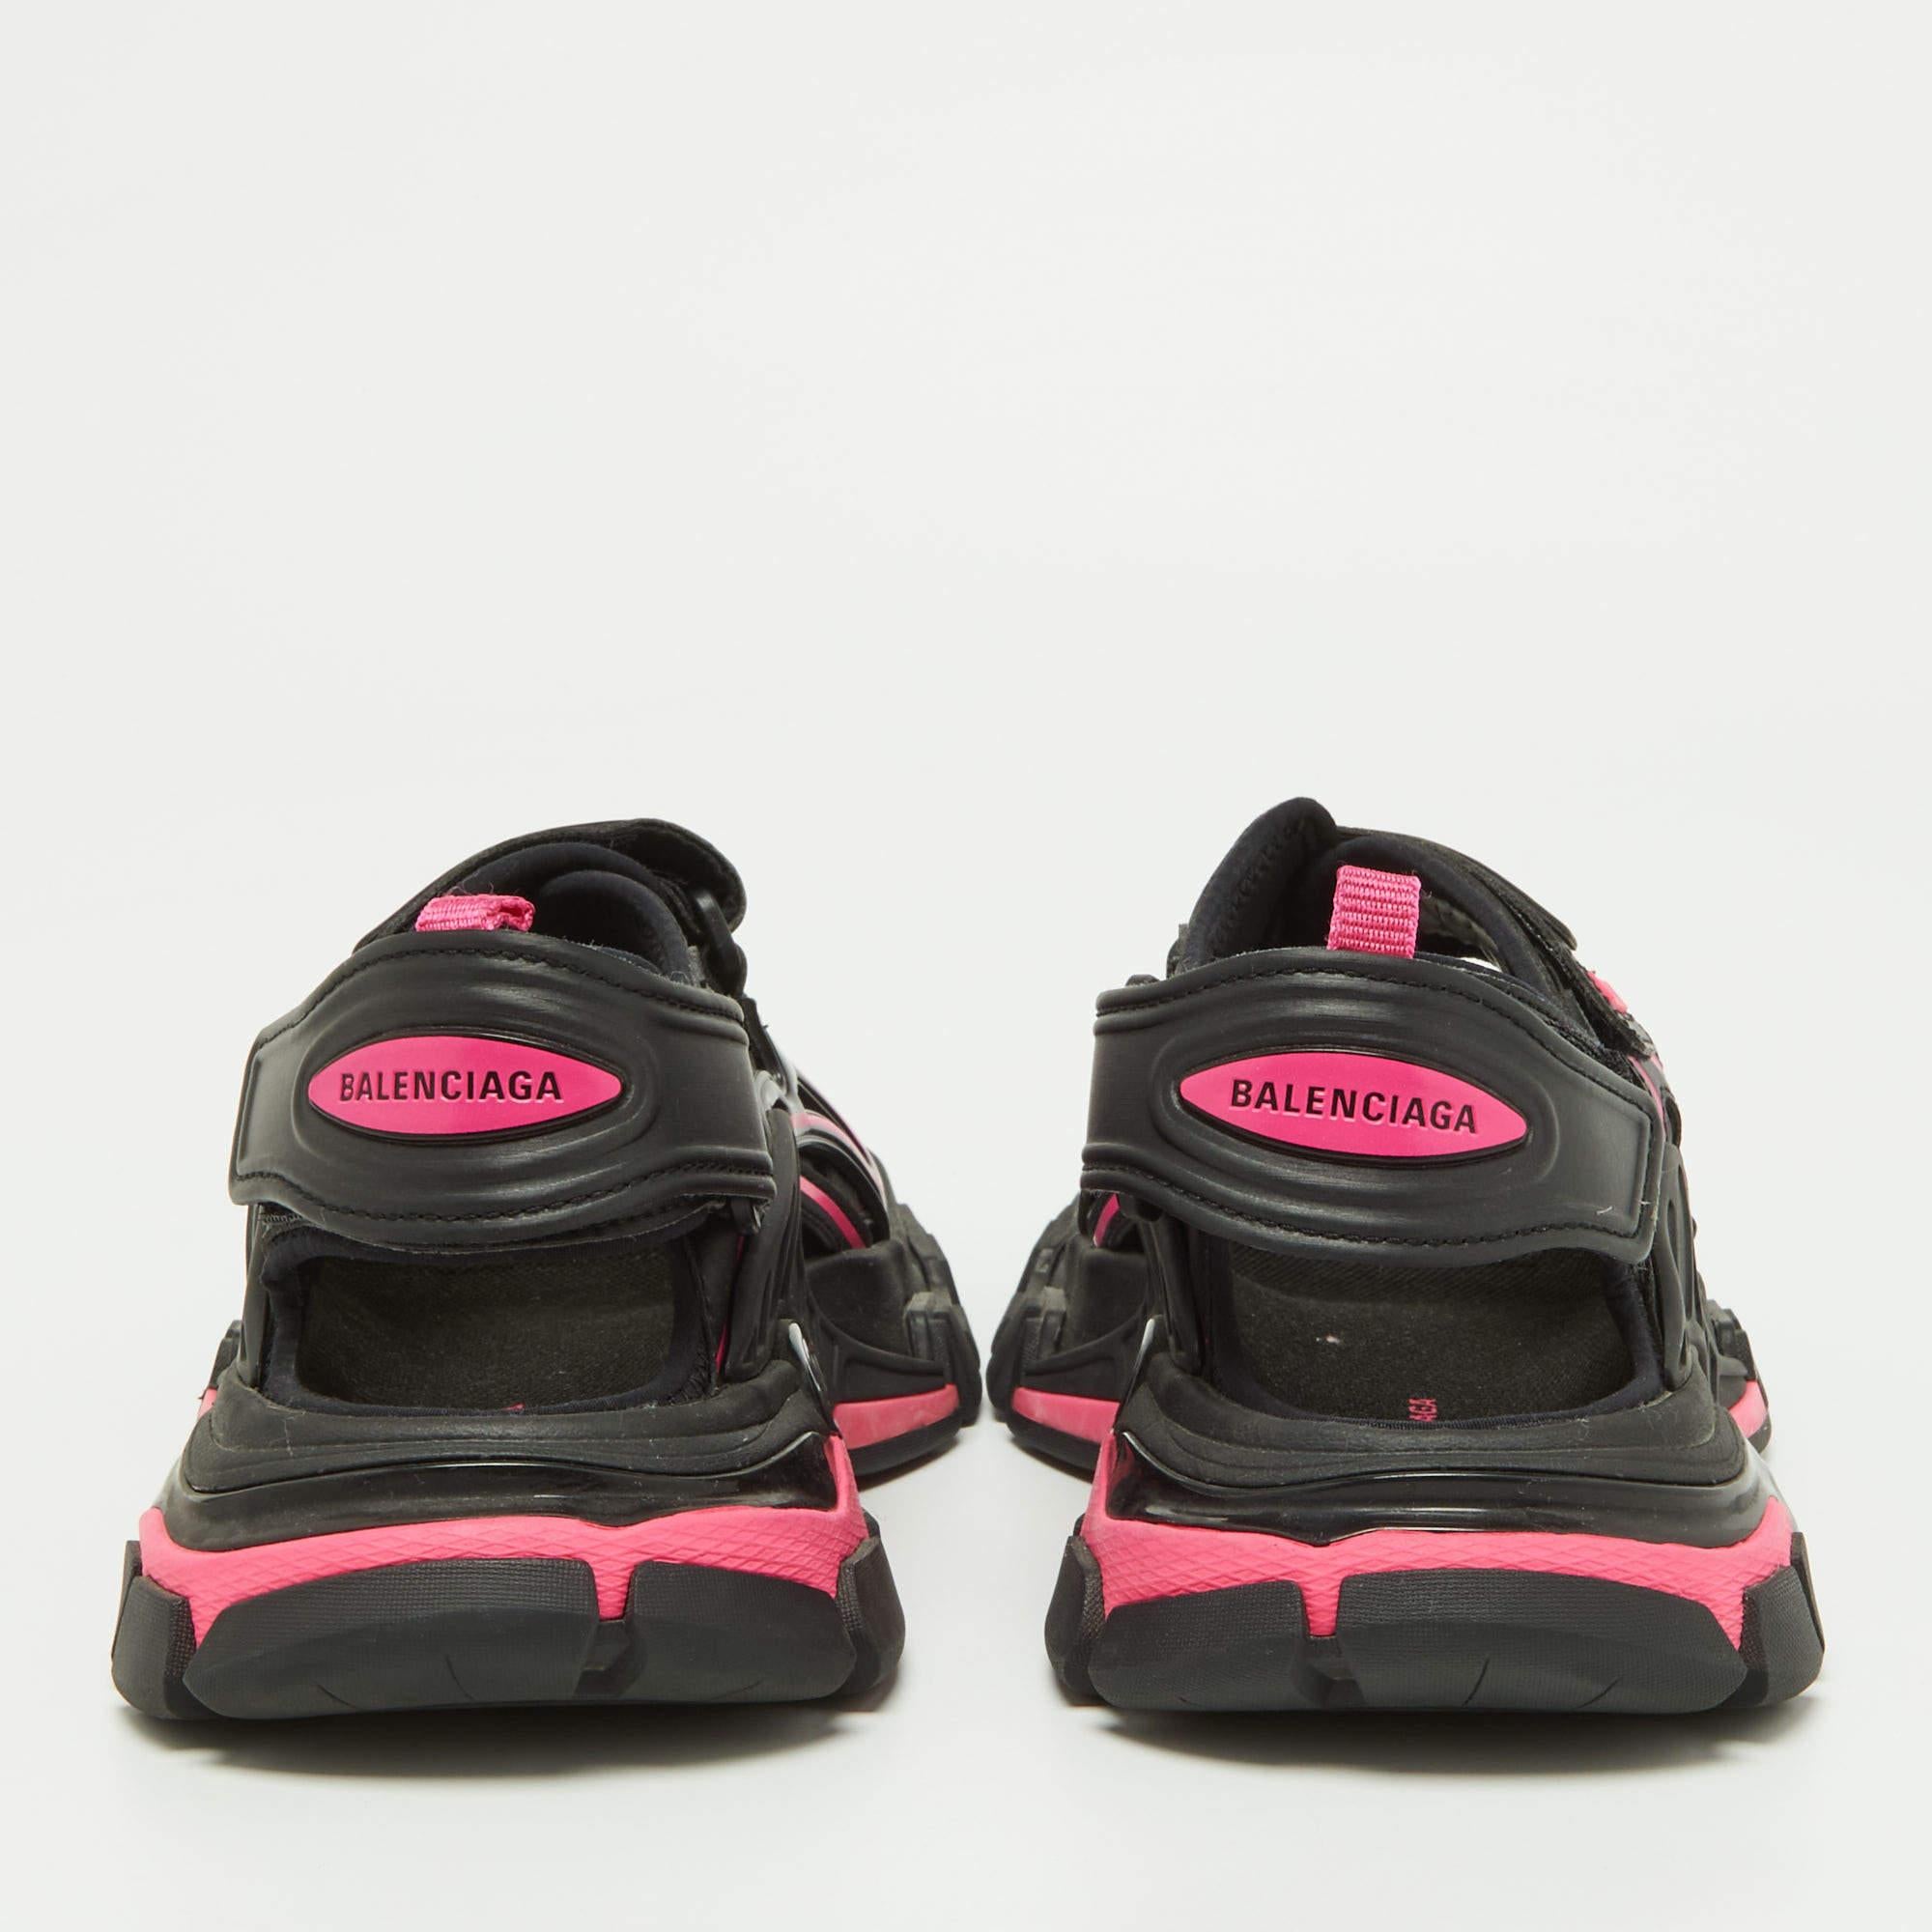 Balenciaga Black/Pink Leather Track Sandals Size 37 In Good Condition For Sale In Dubai, Al Qouz 2